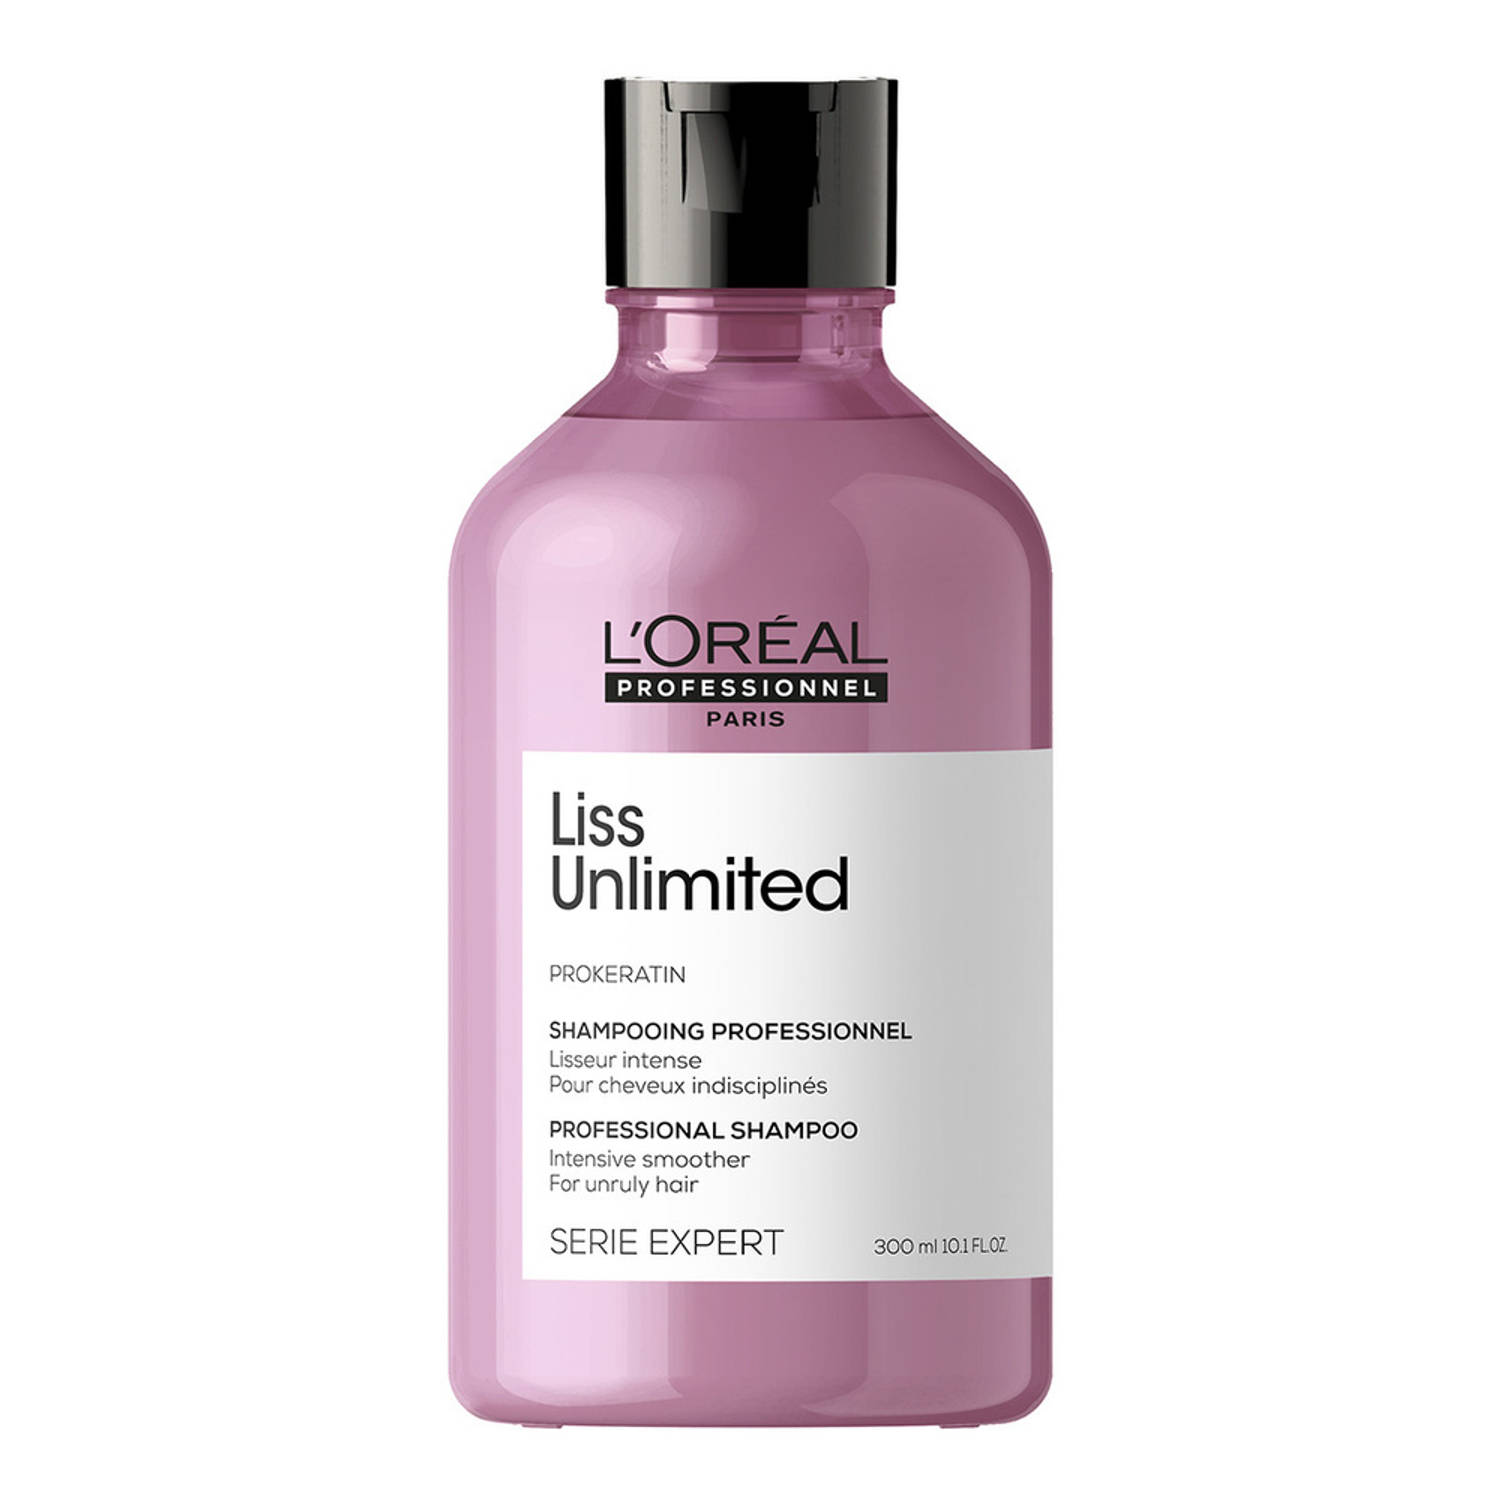 Serie Expert Liss Unlimited Shampoo intensieve gladmakende shampoo voor ongedisciplineerd haar 300ml